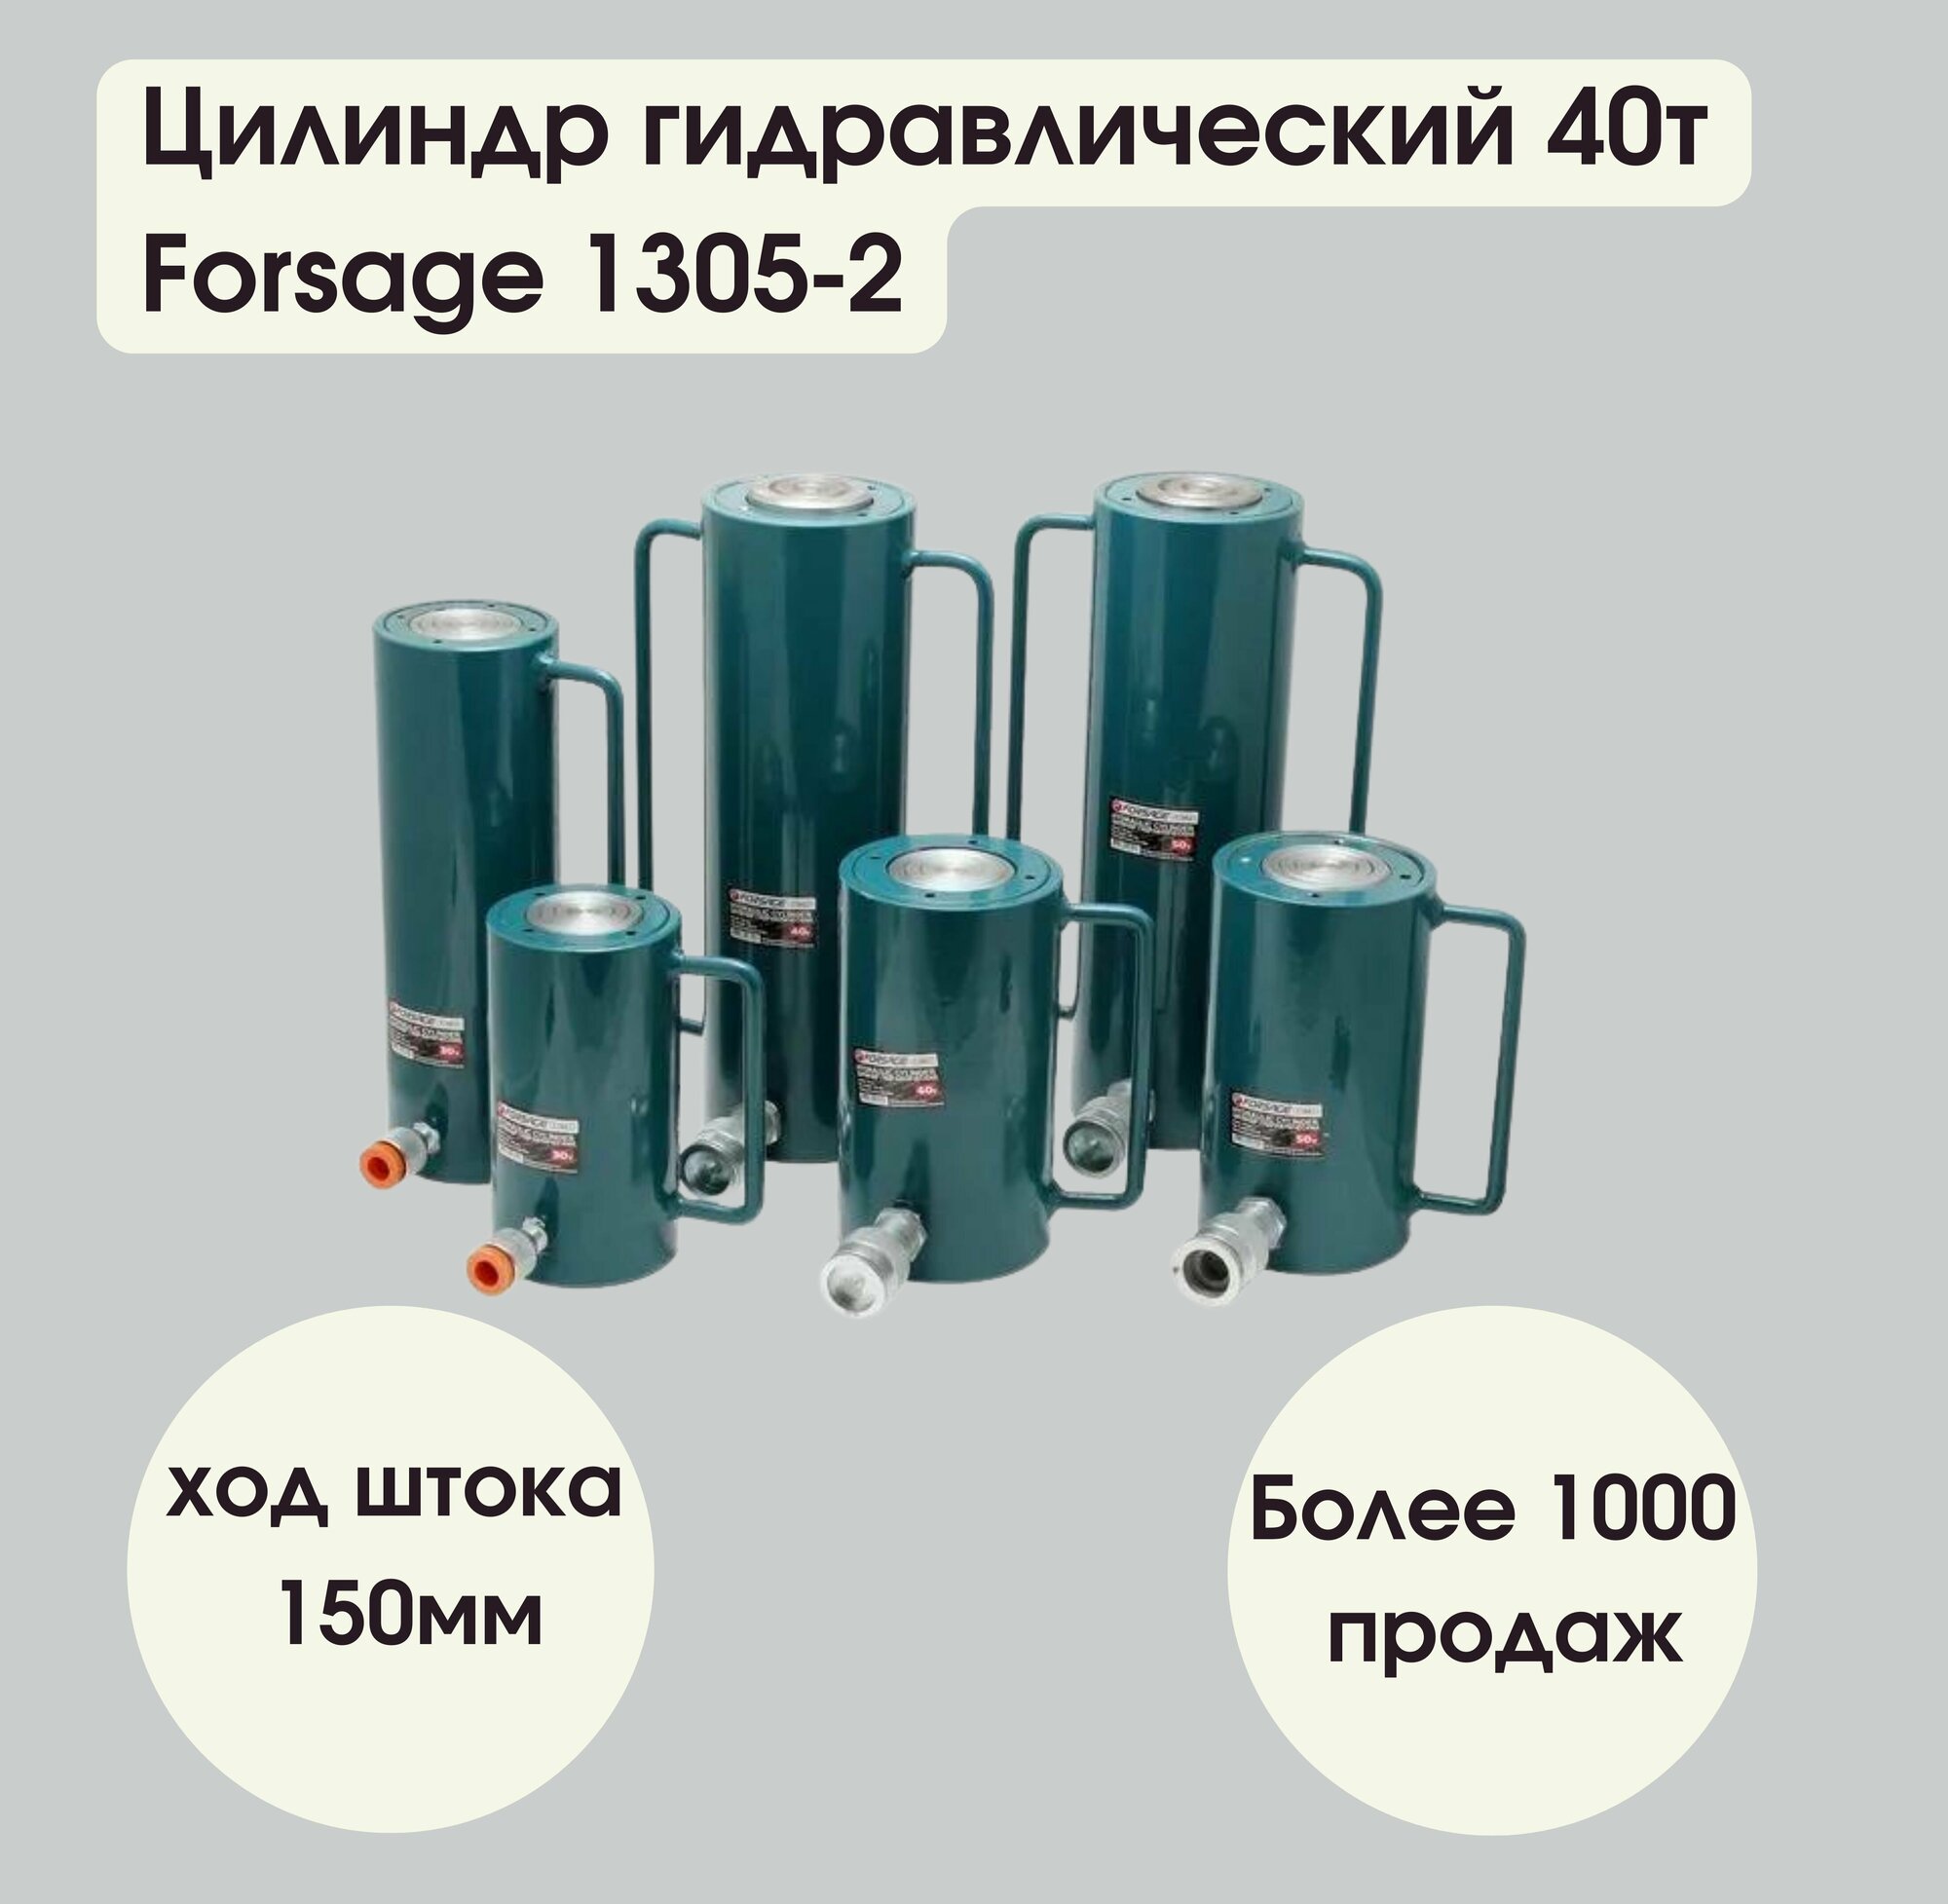 Цилиндр гидравлический 40т (ход штока - 150мм, длина общая - 295мм, давление 616 bar) Forsage F-1305-2